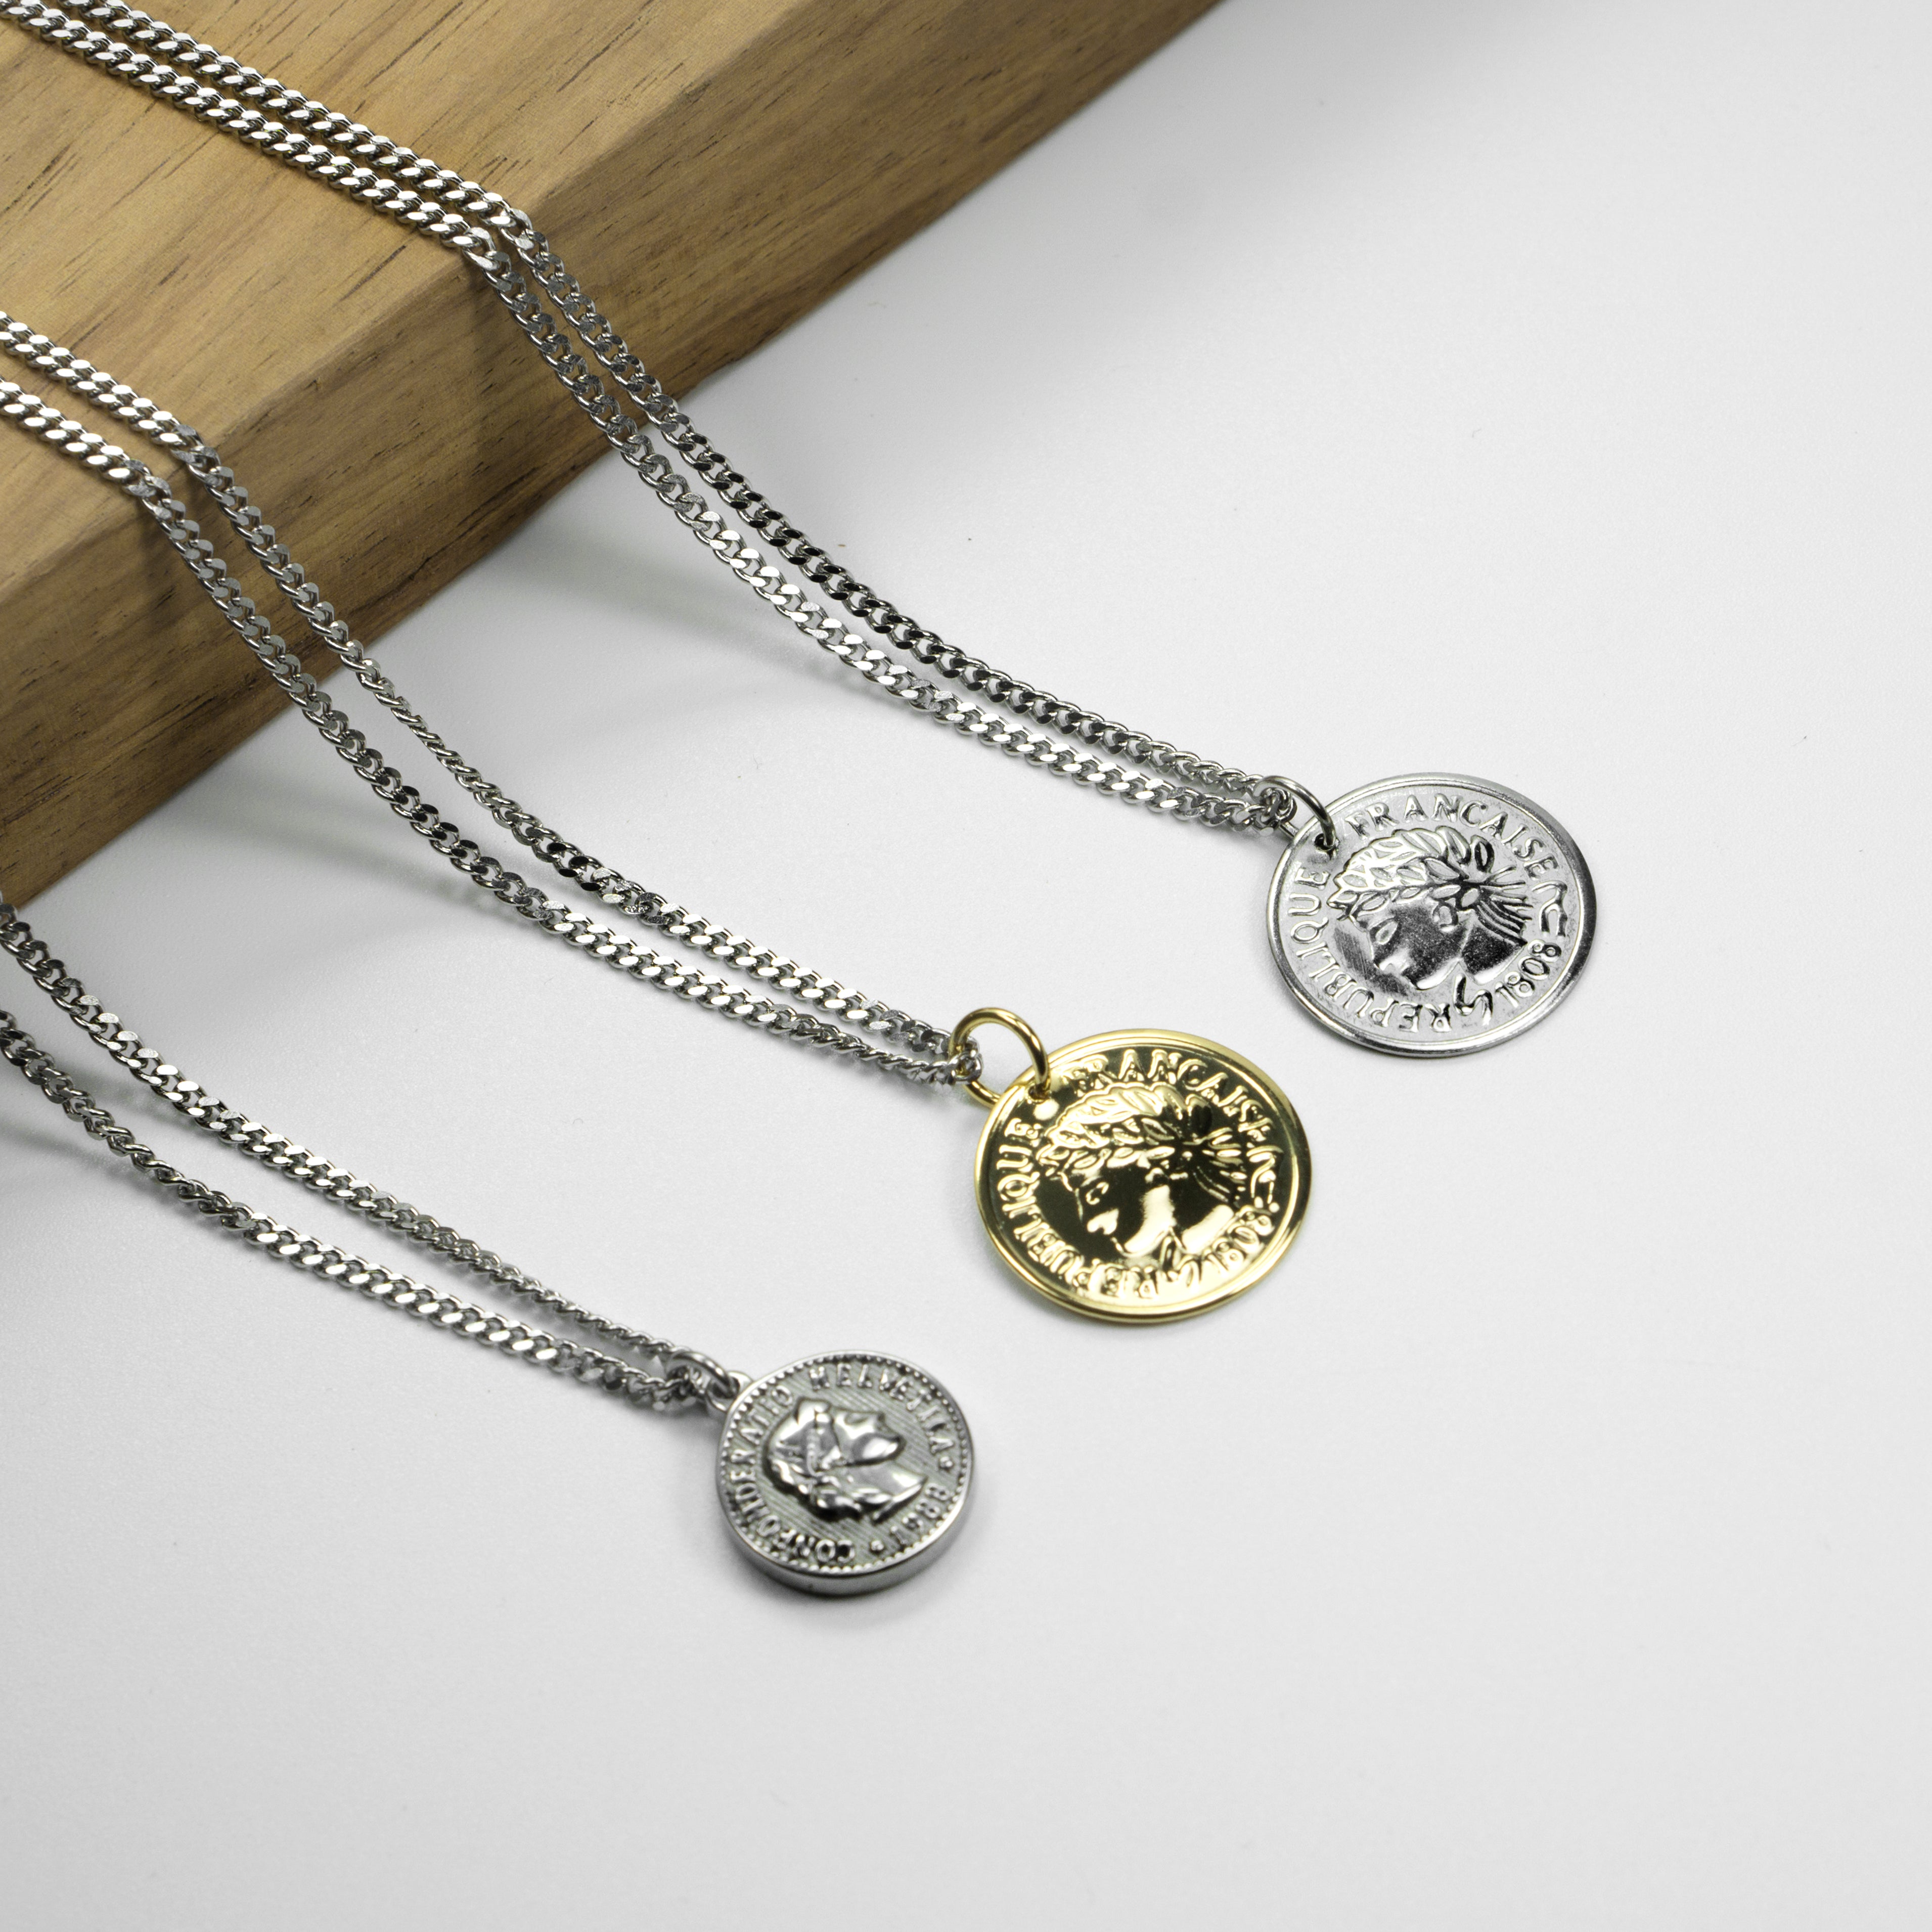 Napoleon Coin Necklace, Silver